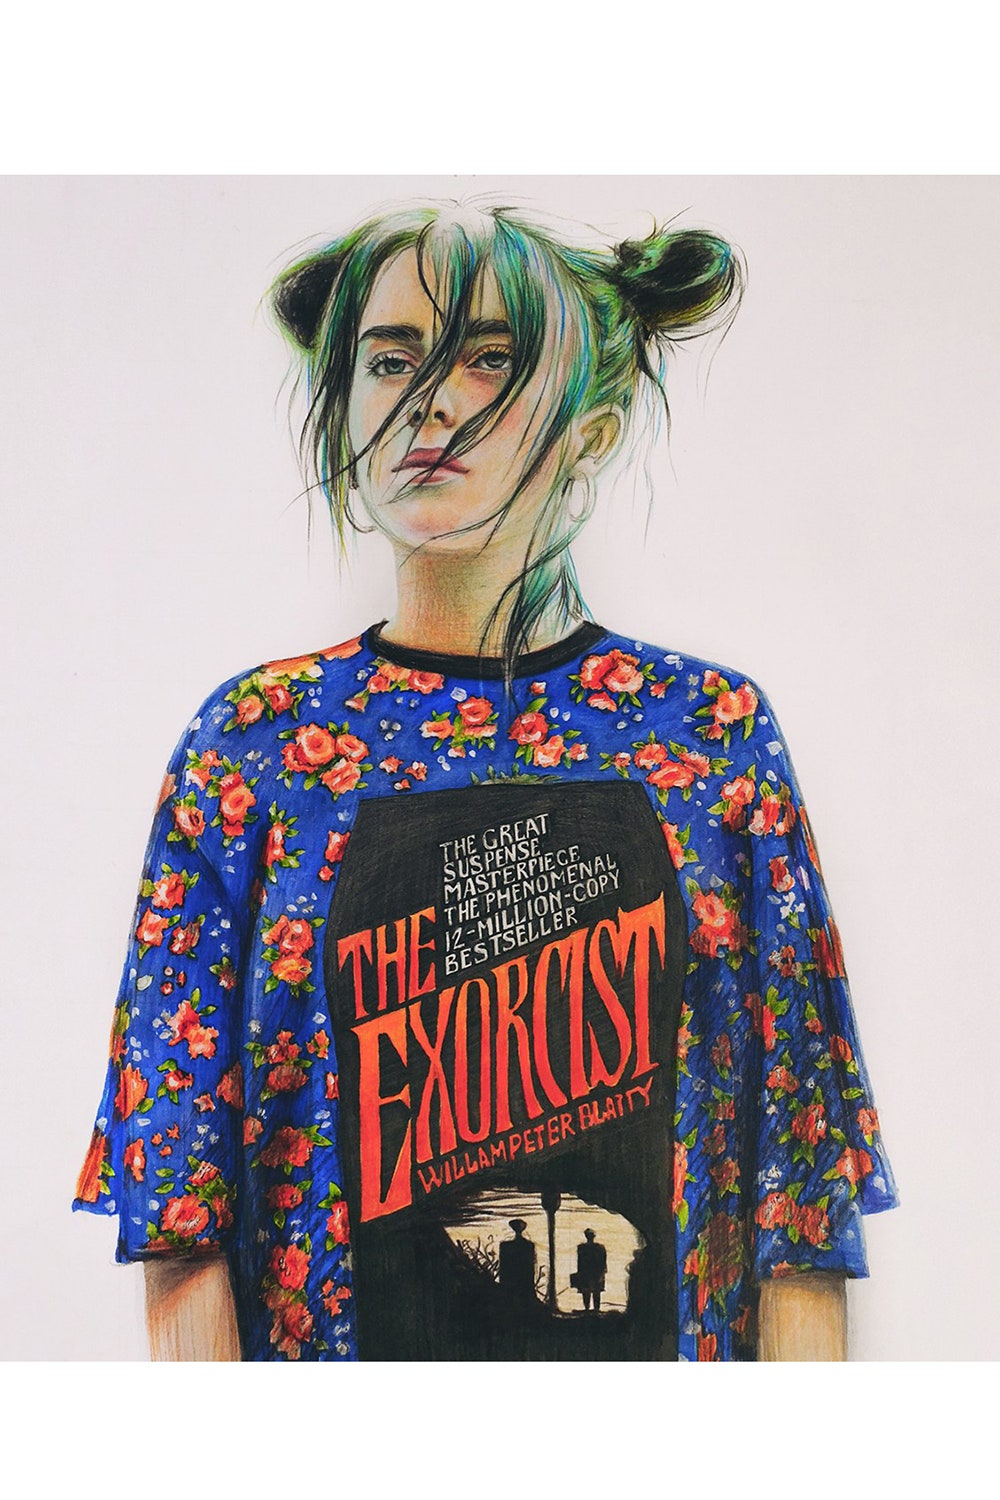 16летняя художница из Пермского края нарисовала обложку для американского Vogue с Билли Айлиш